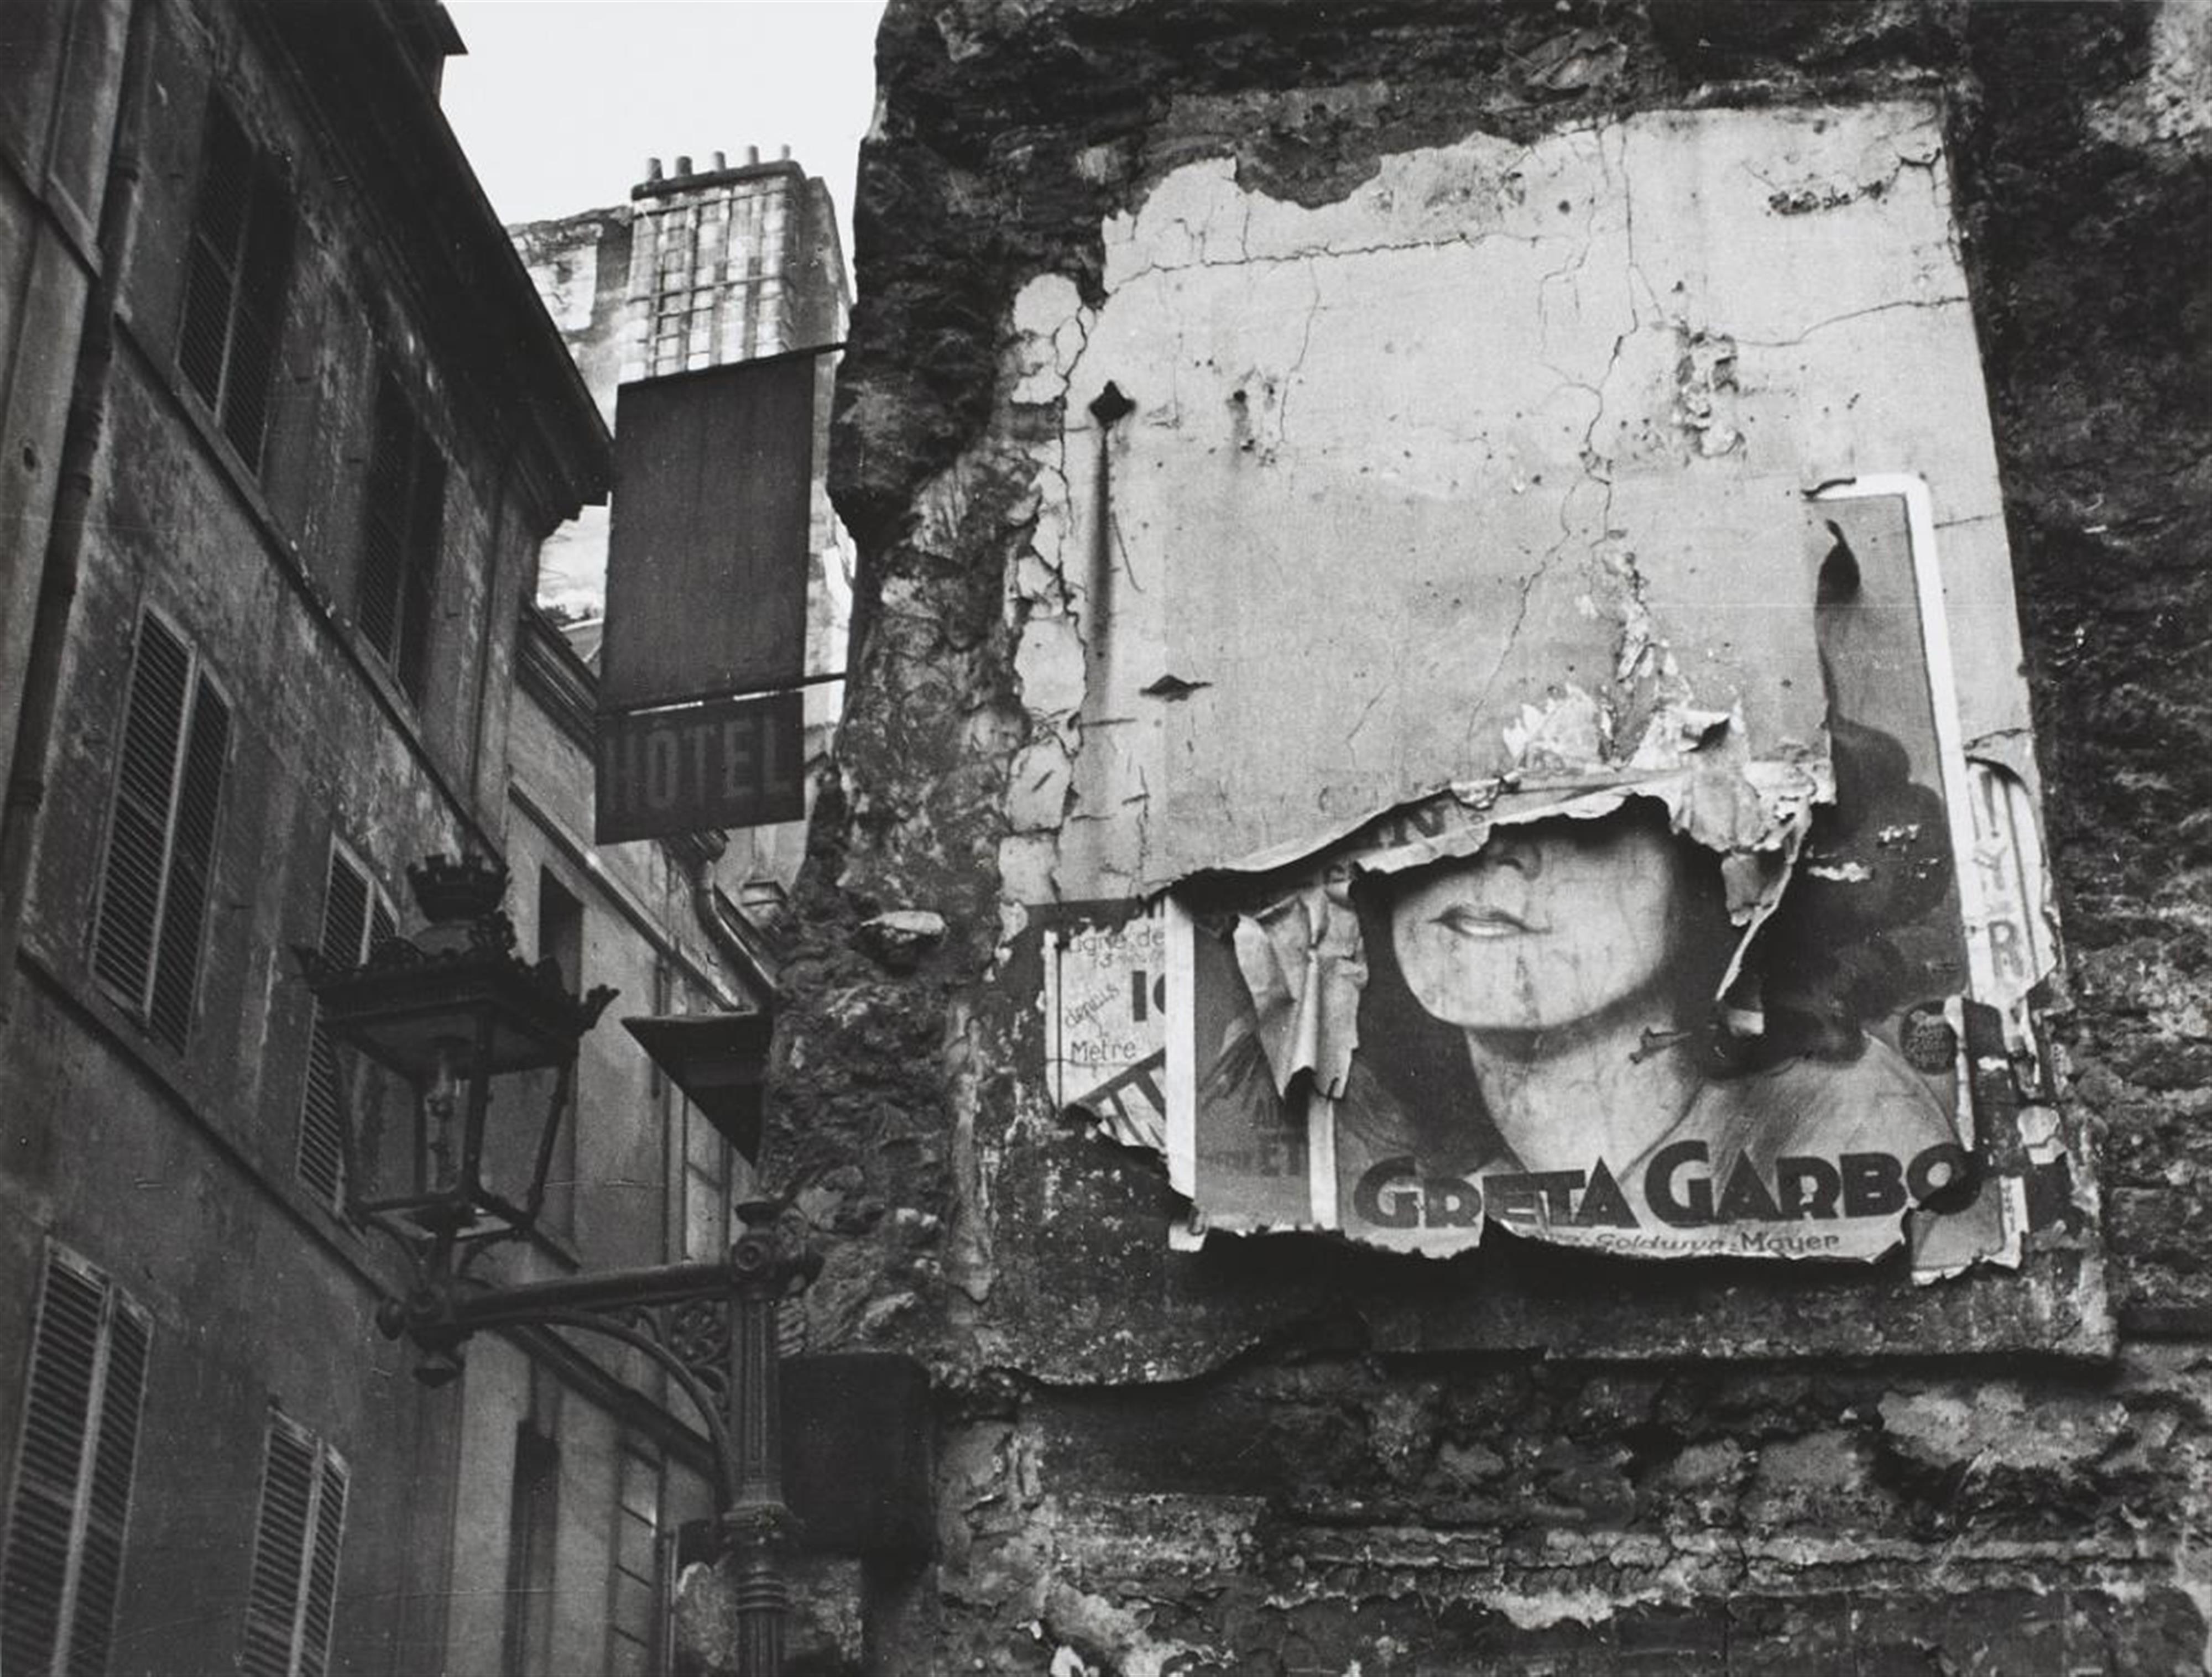 Ilse Bing - Greta Garbo Poster, Paris - image-1